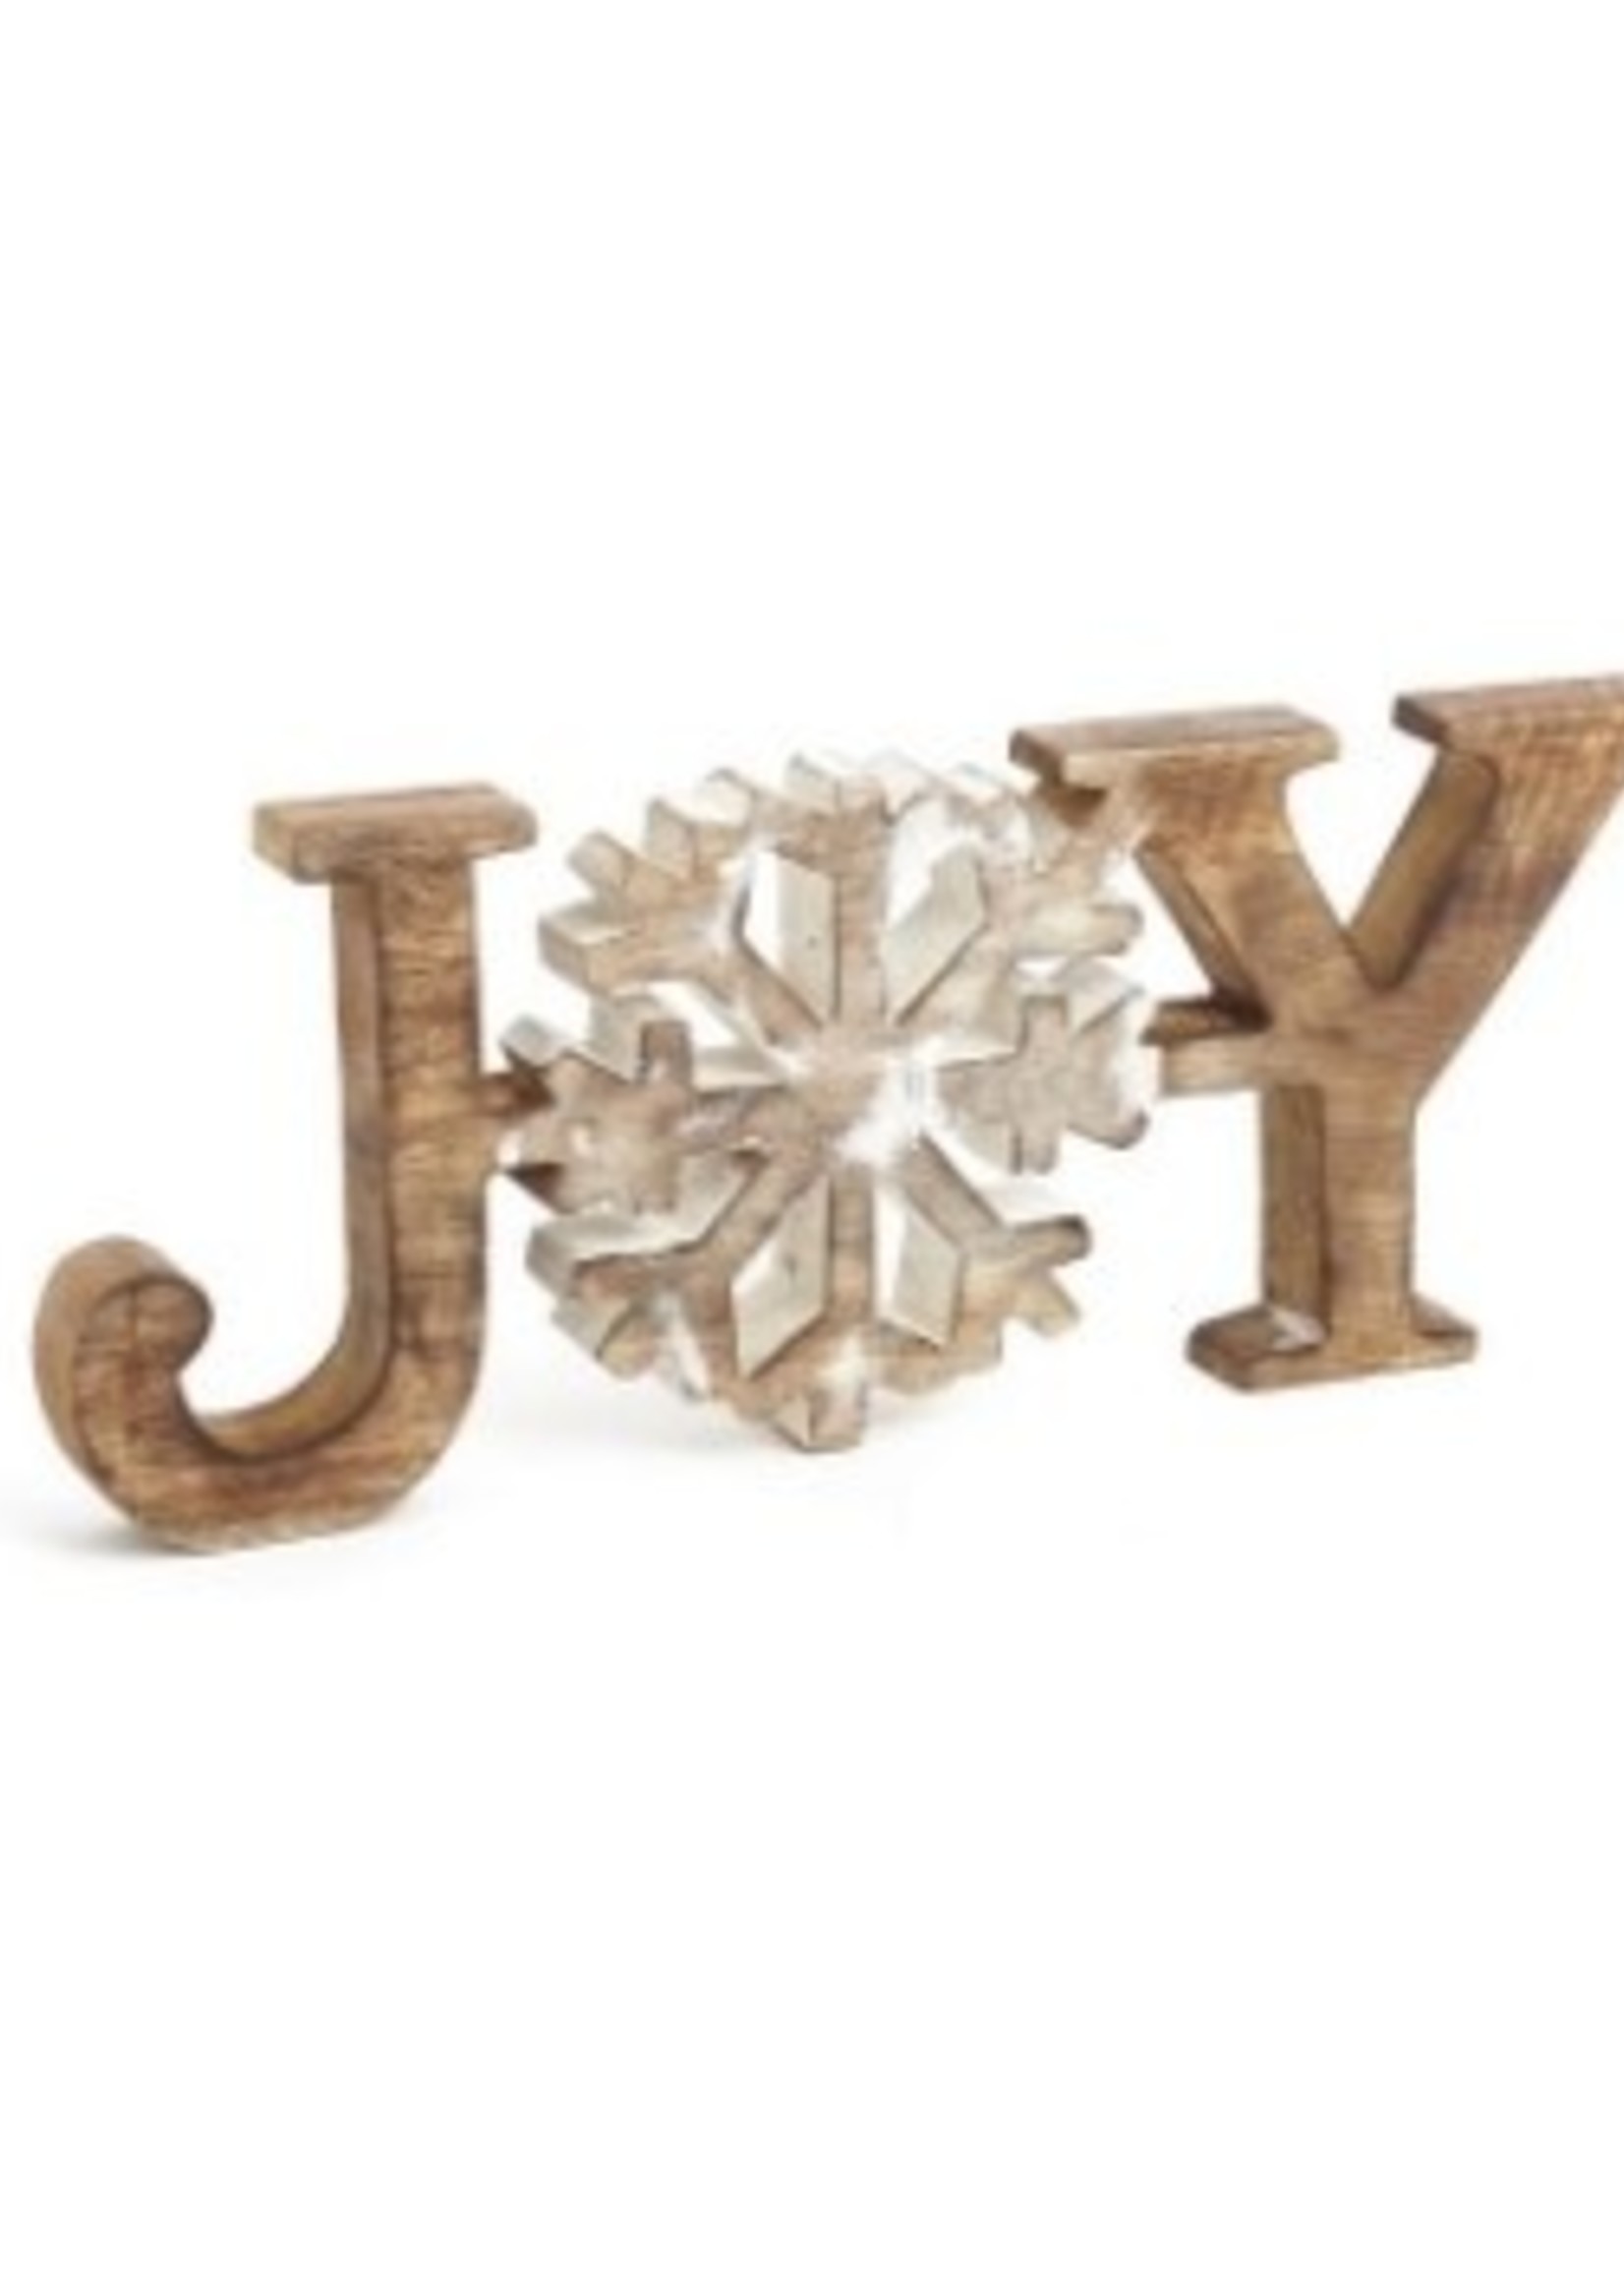 Pine/ADV Christmas Wood Joy Sign